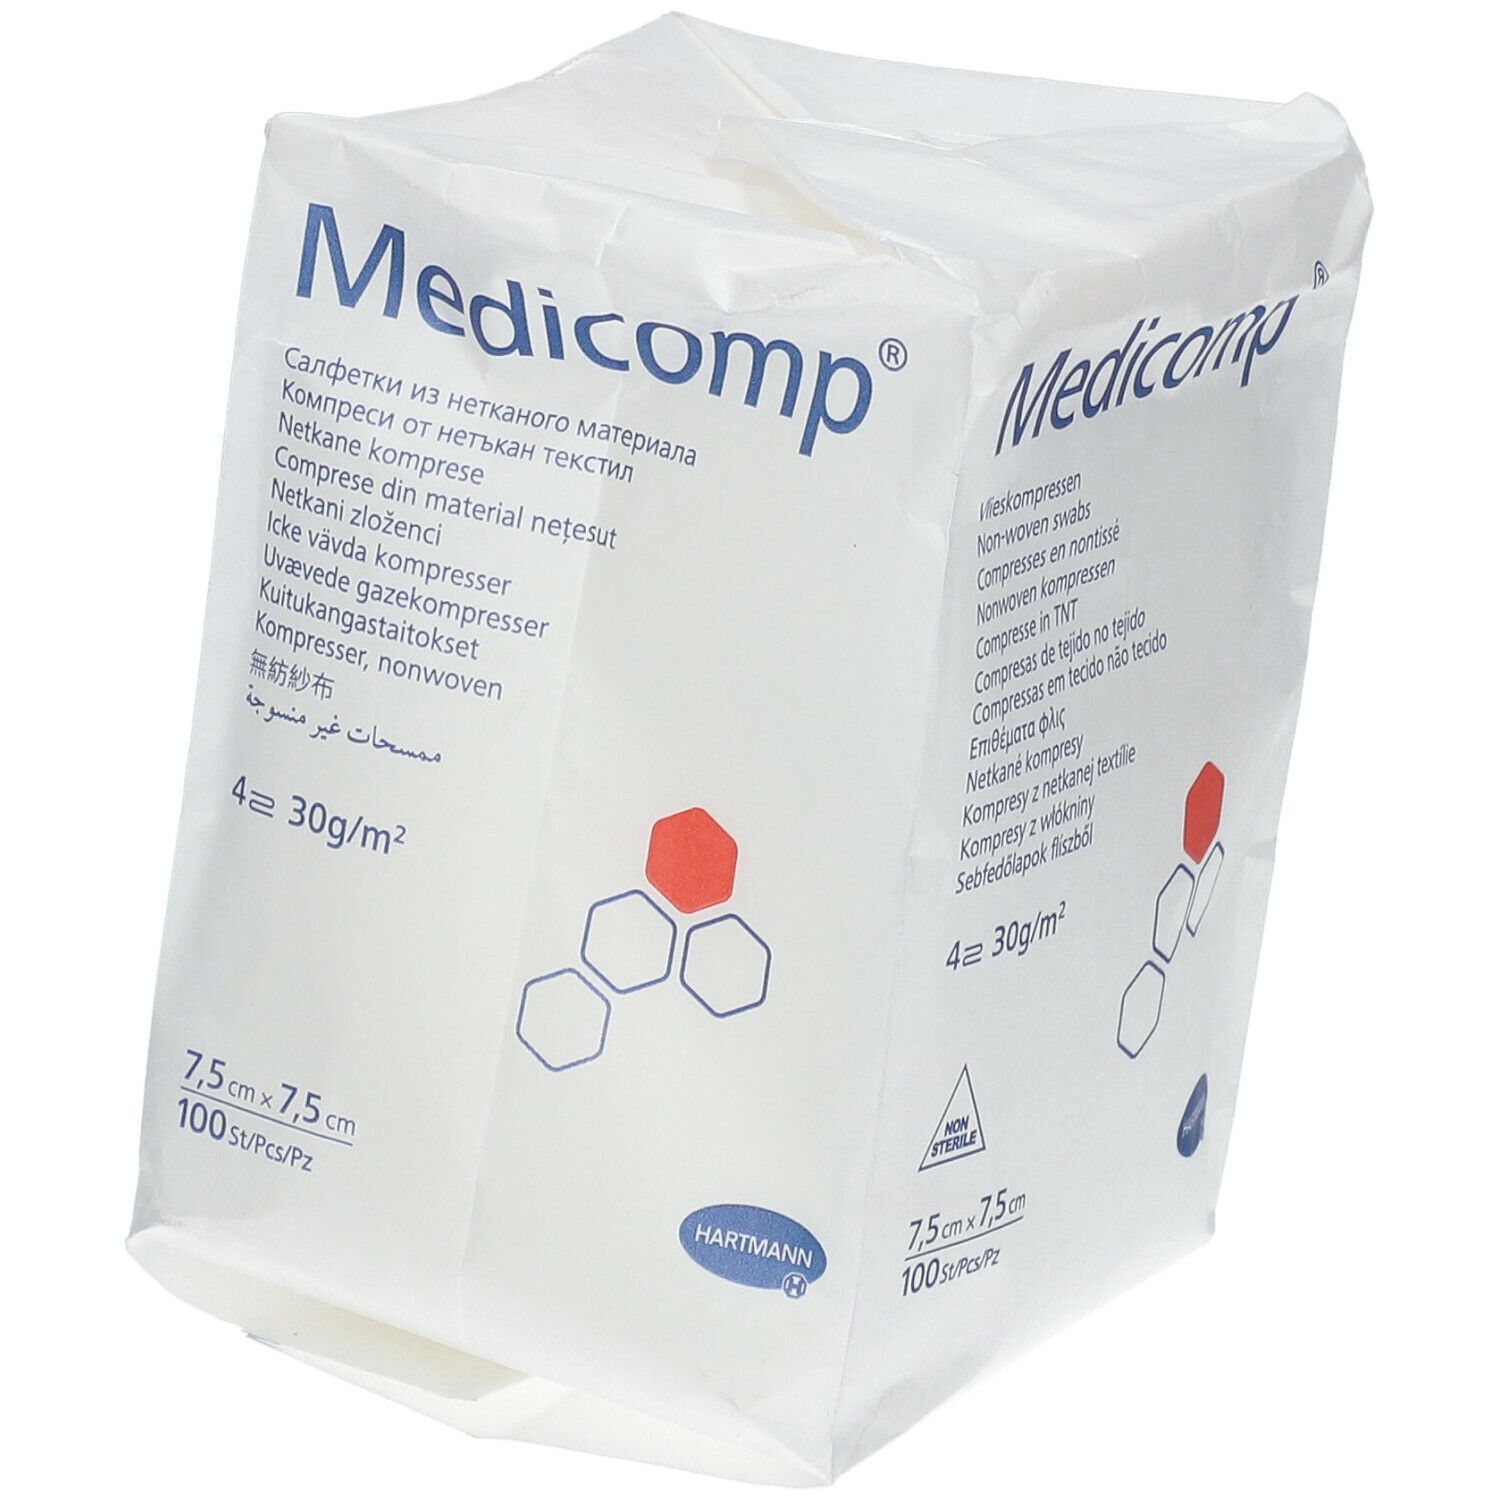 Medicomp® Komprressen unsteril 7,5 cm x 7,5 cm